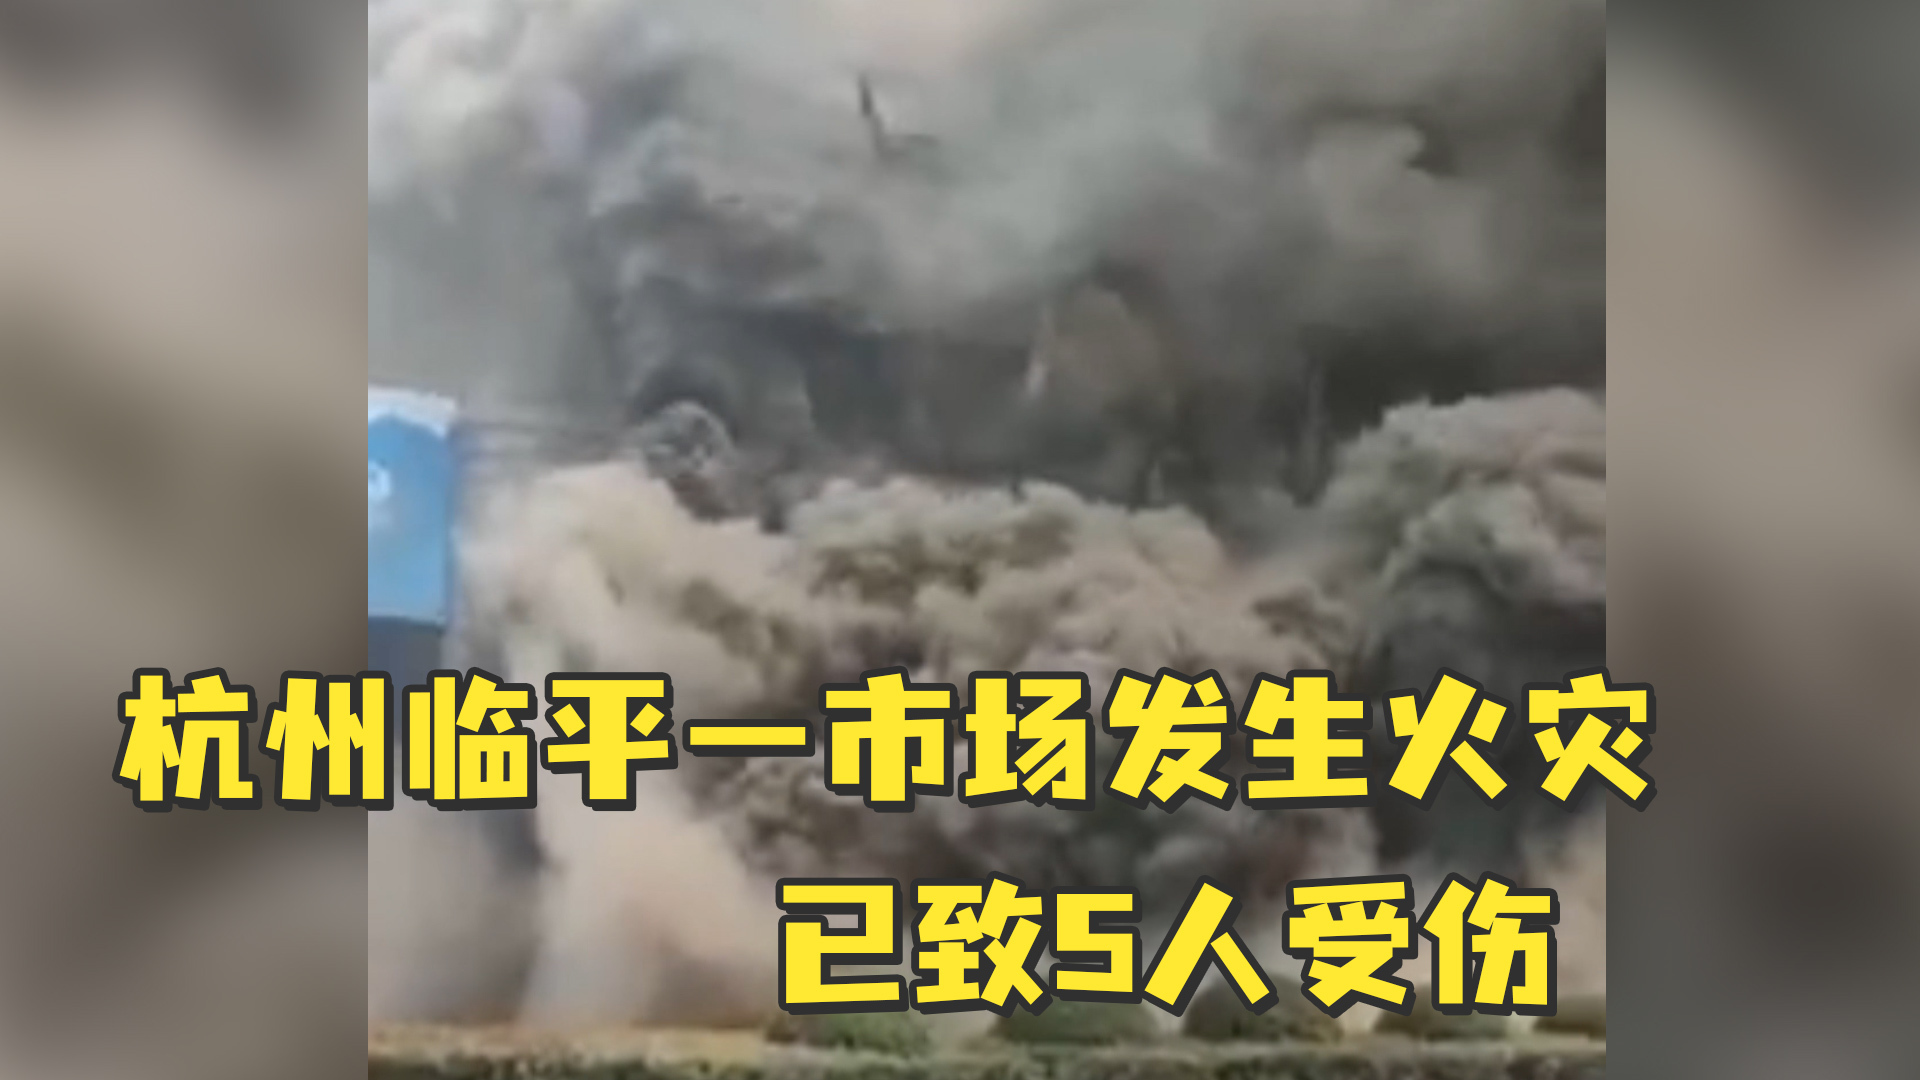 又是电动车火灾！北京一居民楼深夜大火致一死一伤 - 海报新闻